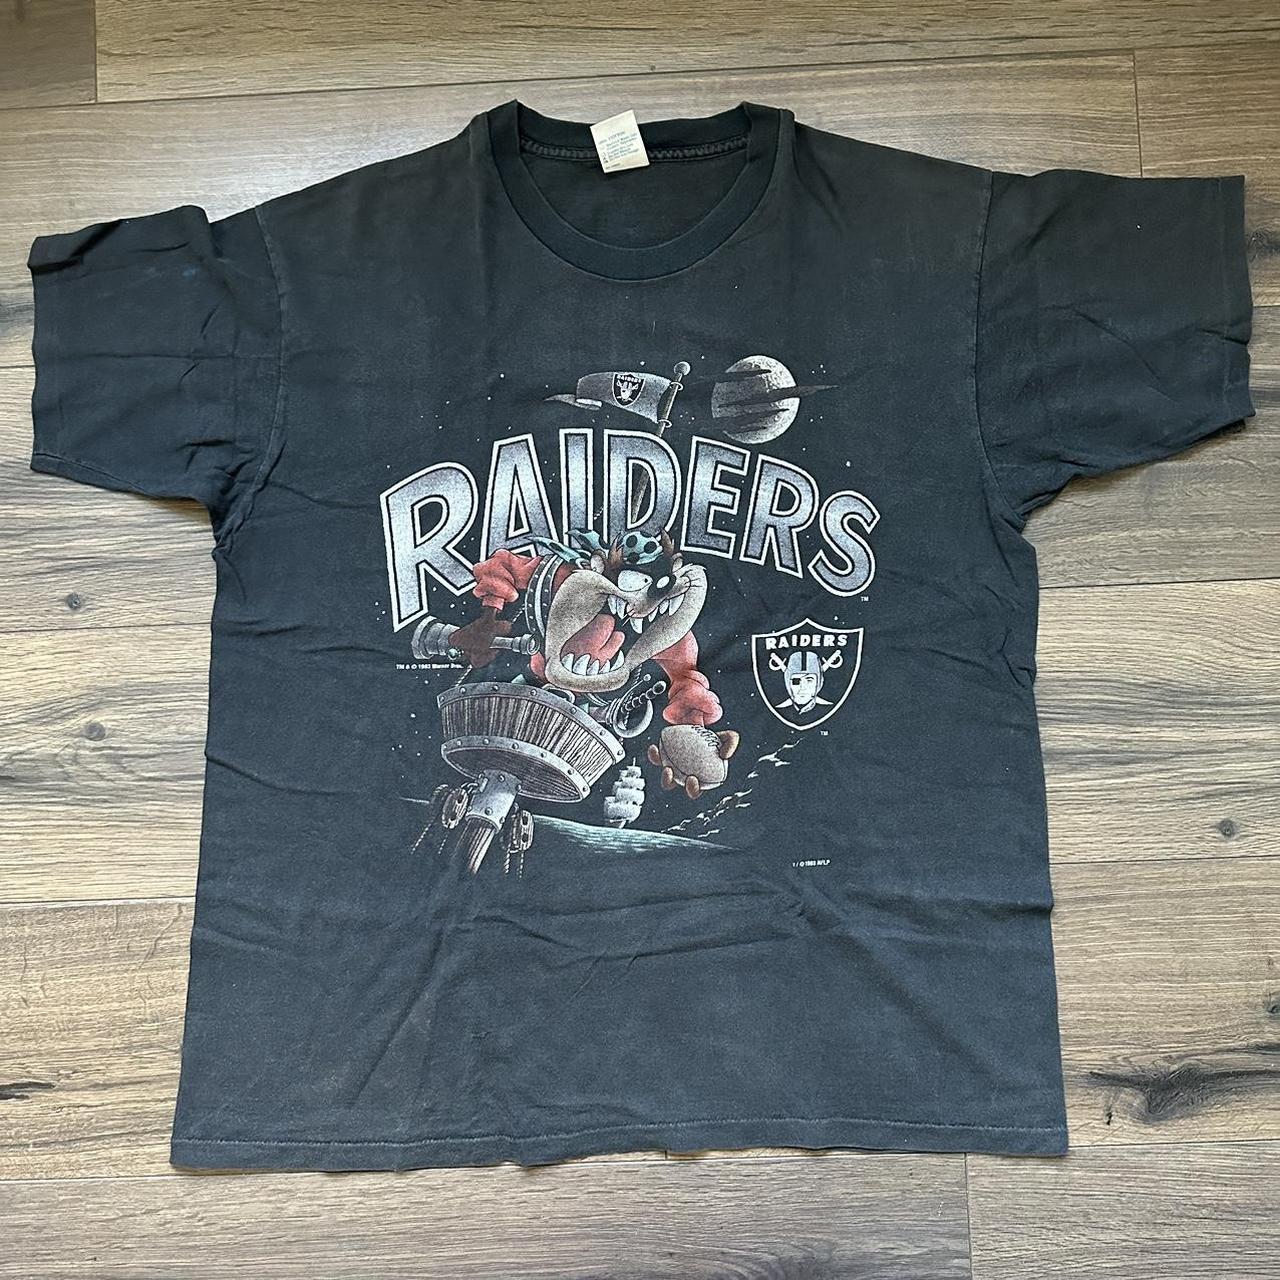 Vintage Oakland Raiders Taz t shirt Size XL,... - Depop